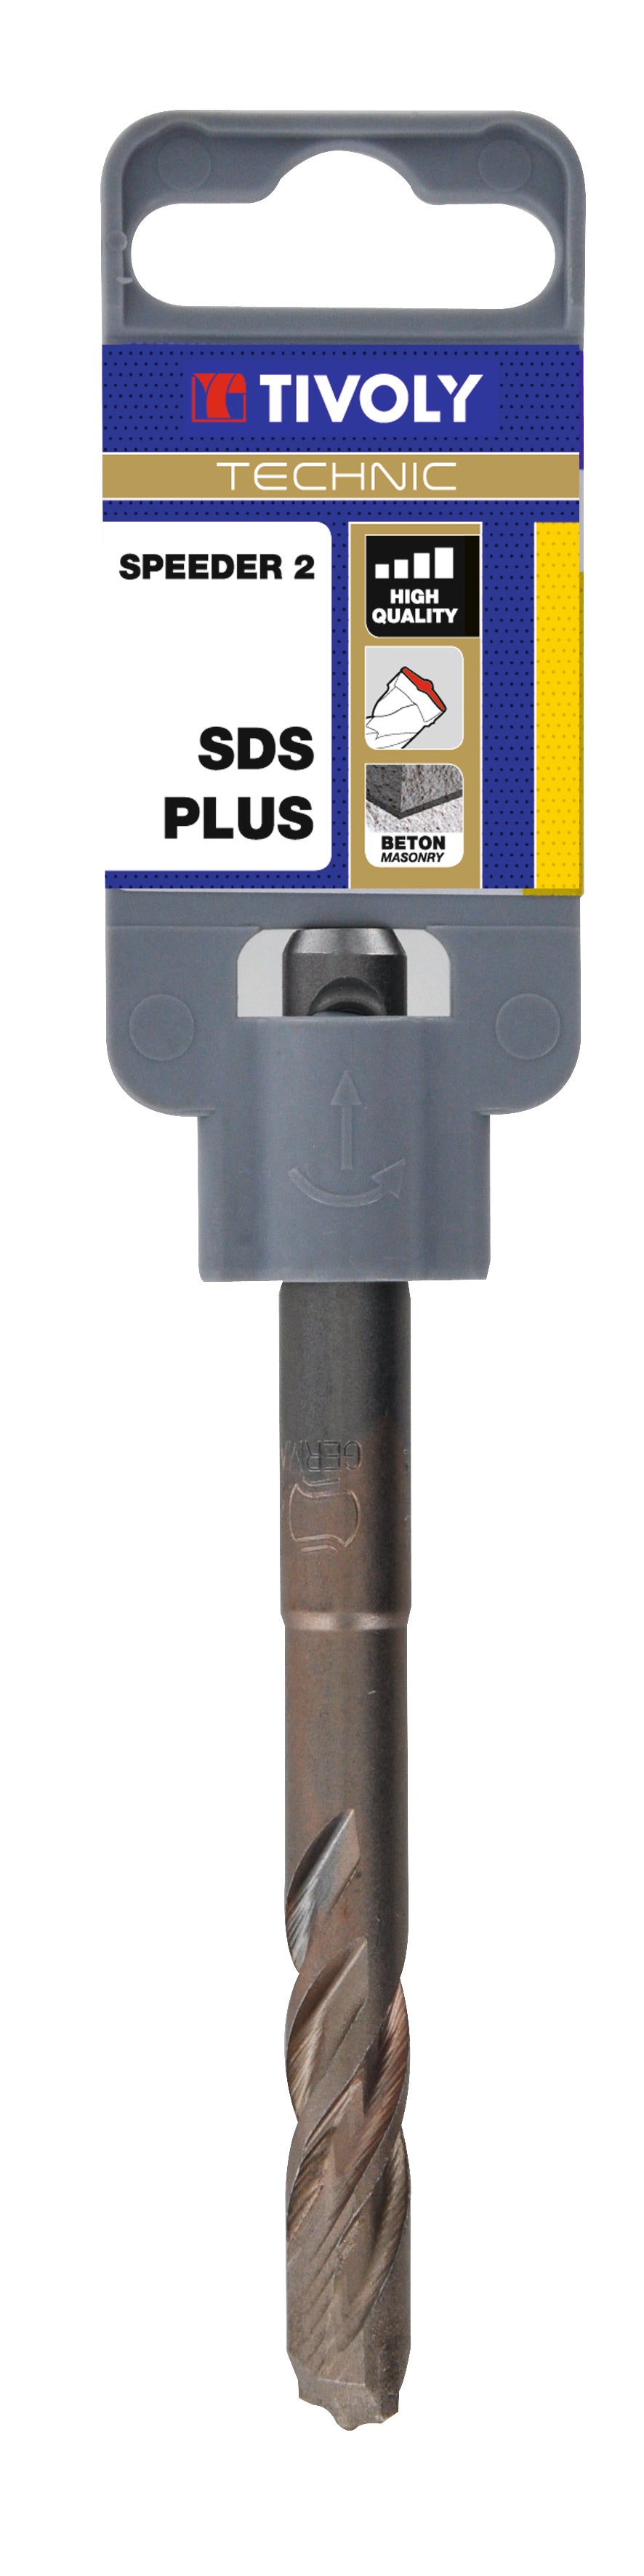 Bosch Professional Foret marteau SDS plus-5, 20 x 950 x 1000 mm